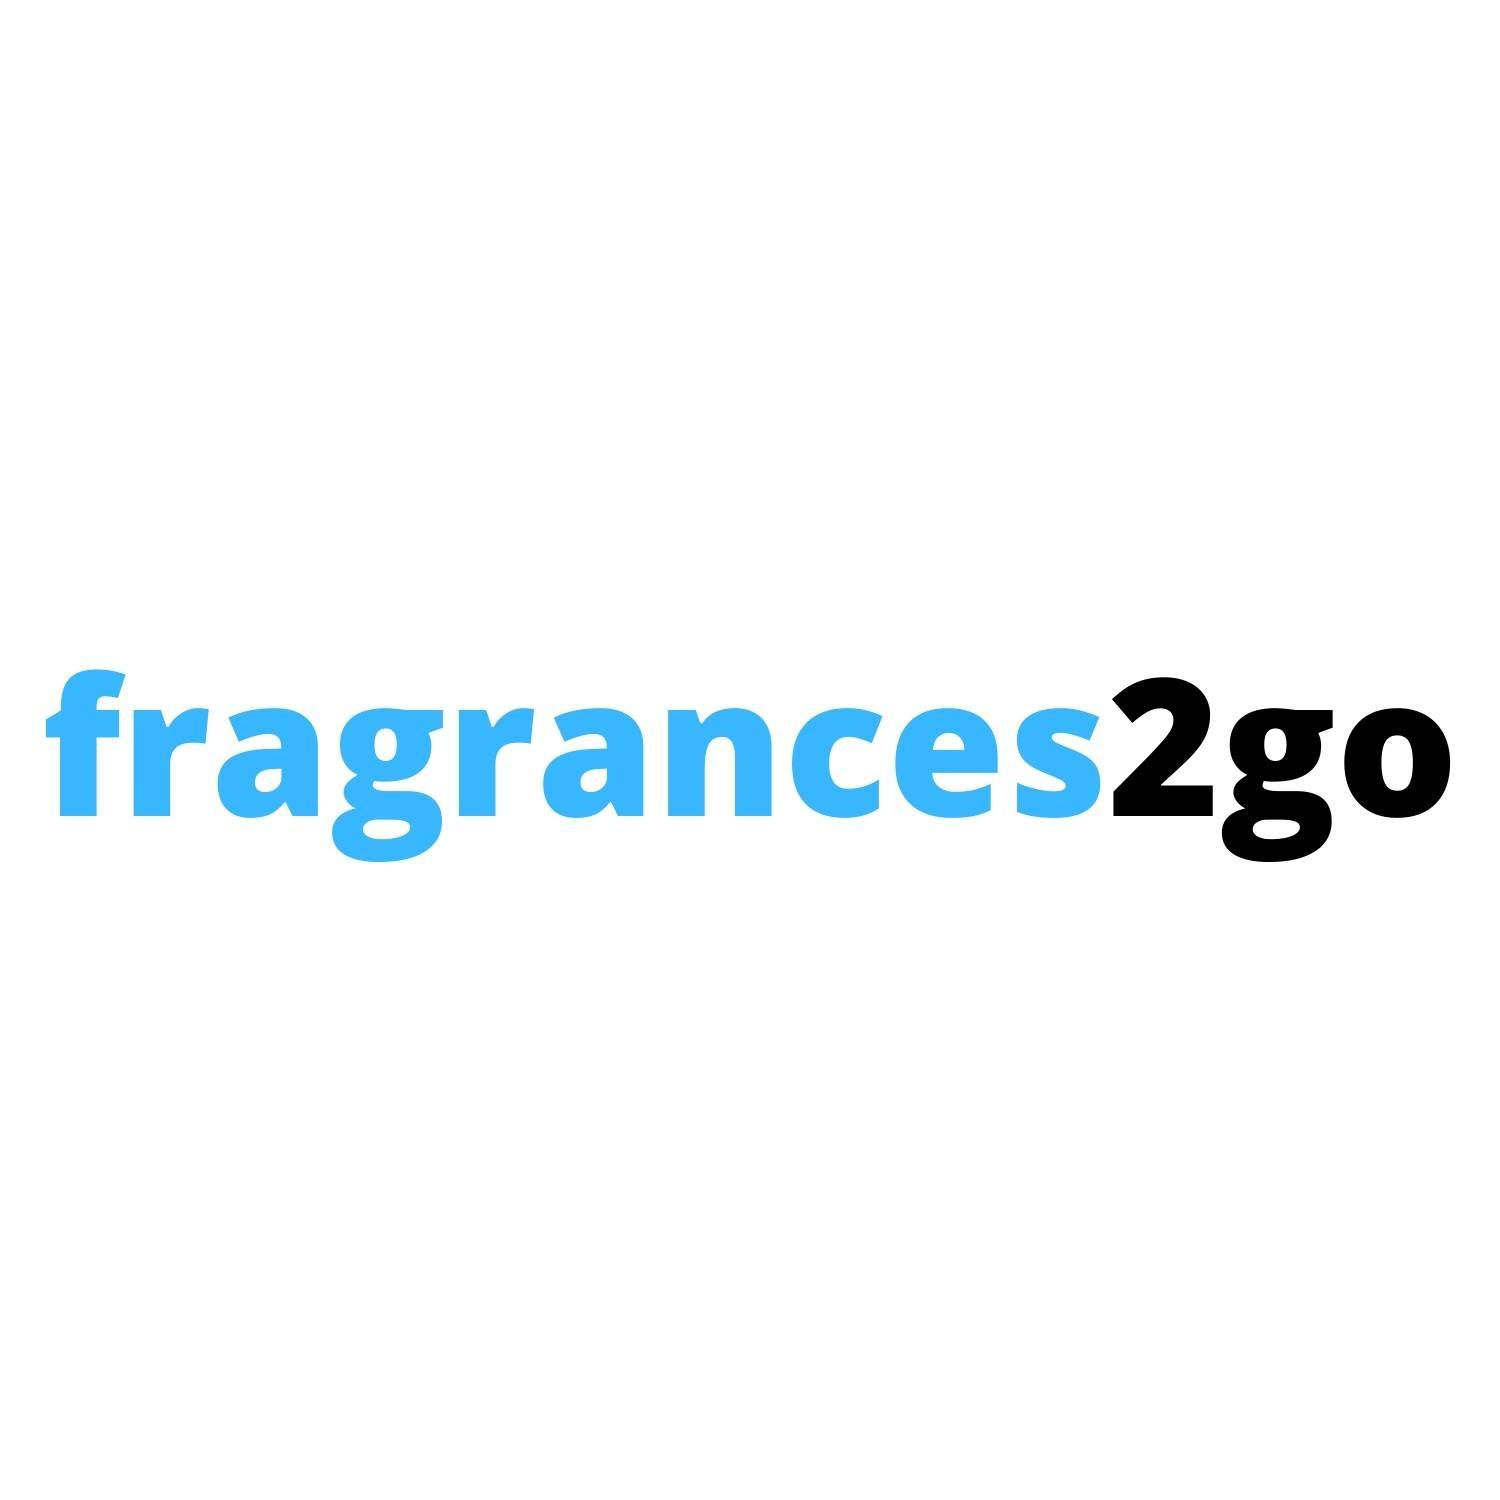 fragrance2go Profile Picture